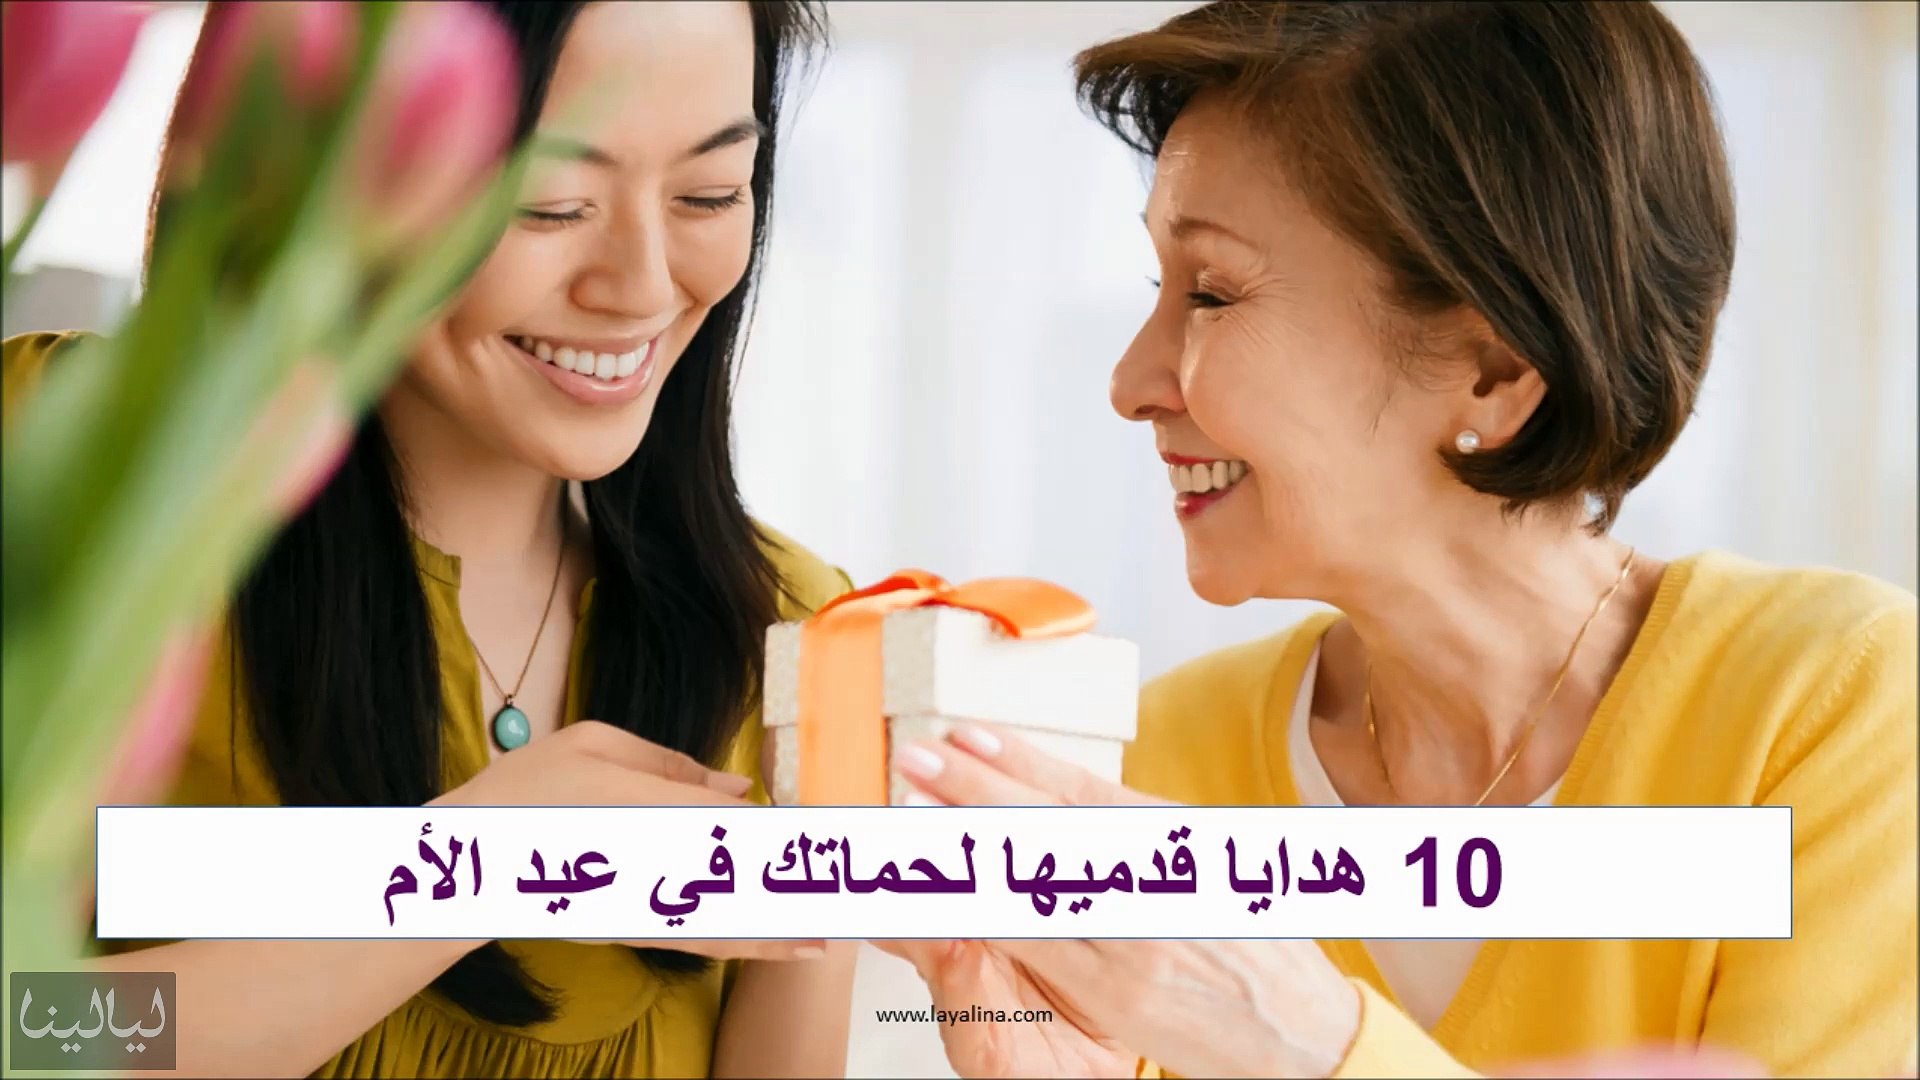 10 هدايا قدميها لحماتك في عيد الأم - فيديو Dailymotion